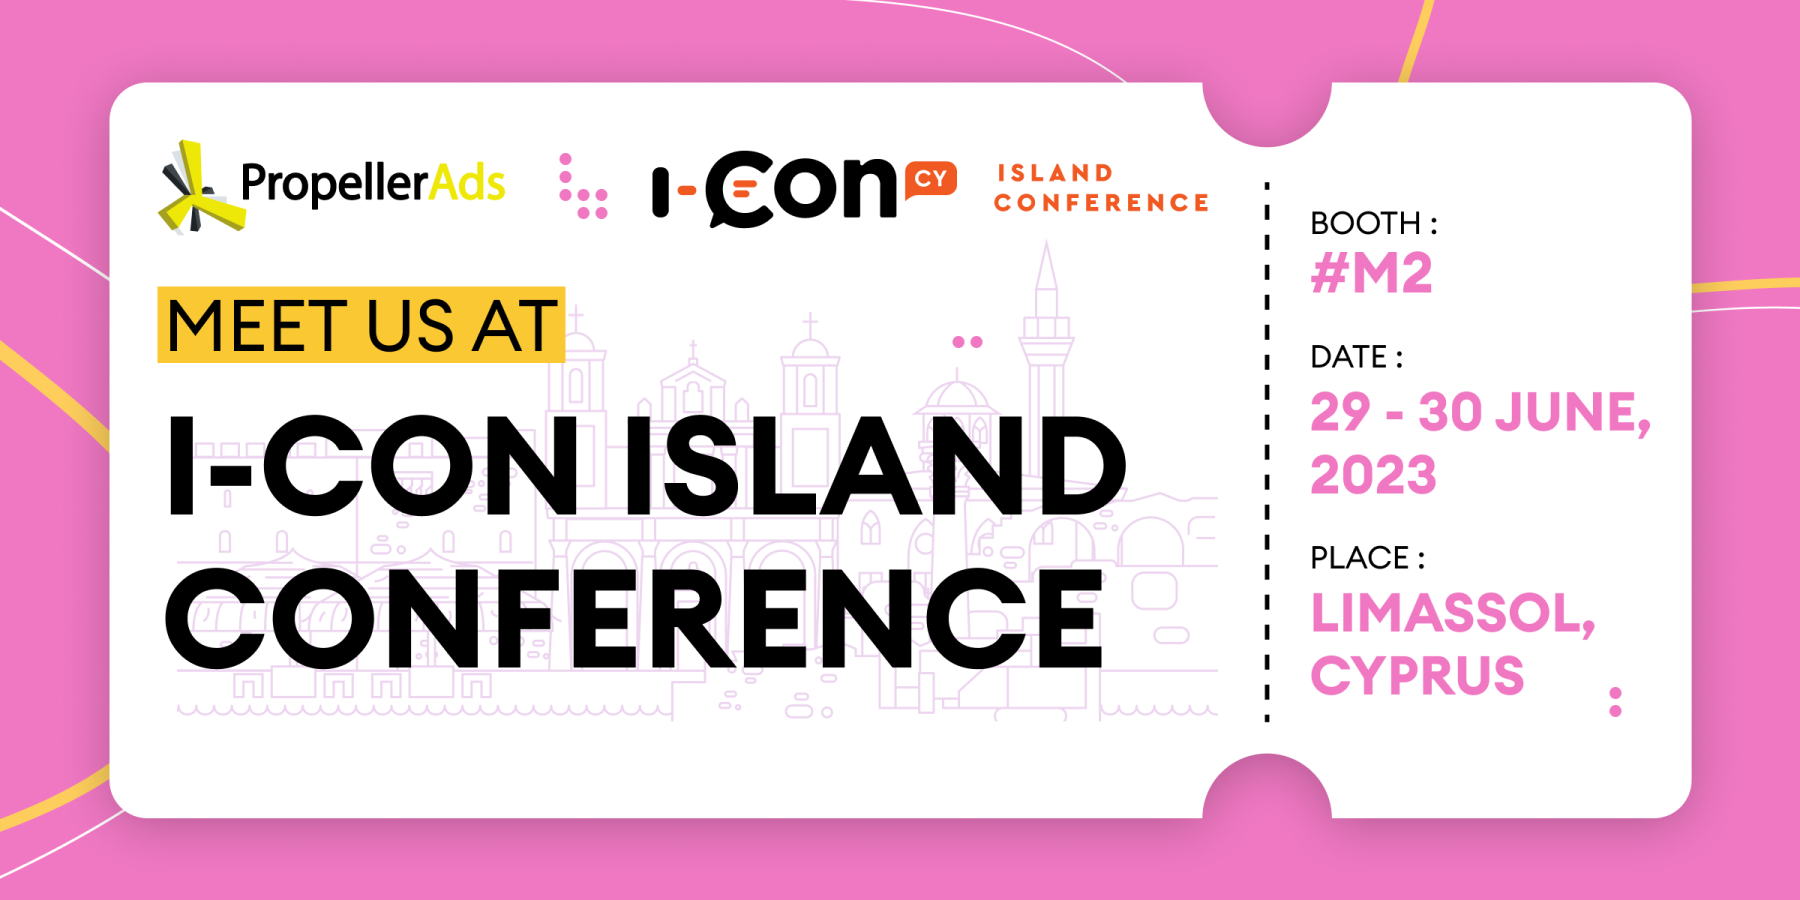 I-con island conference